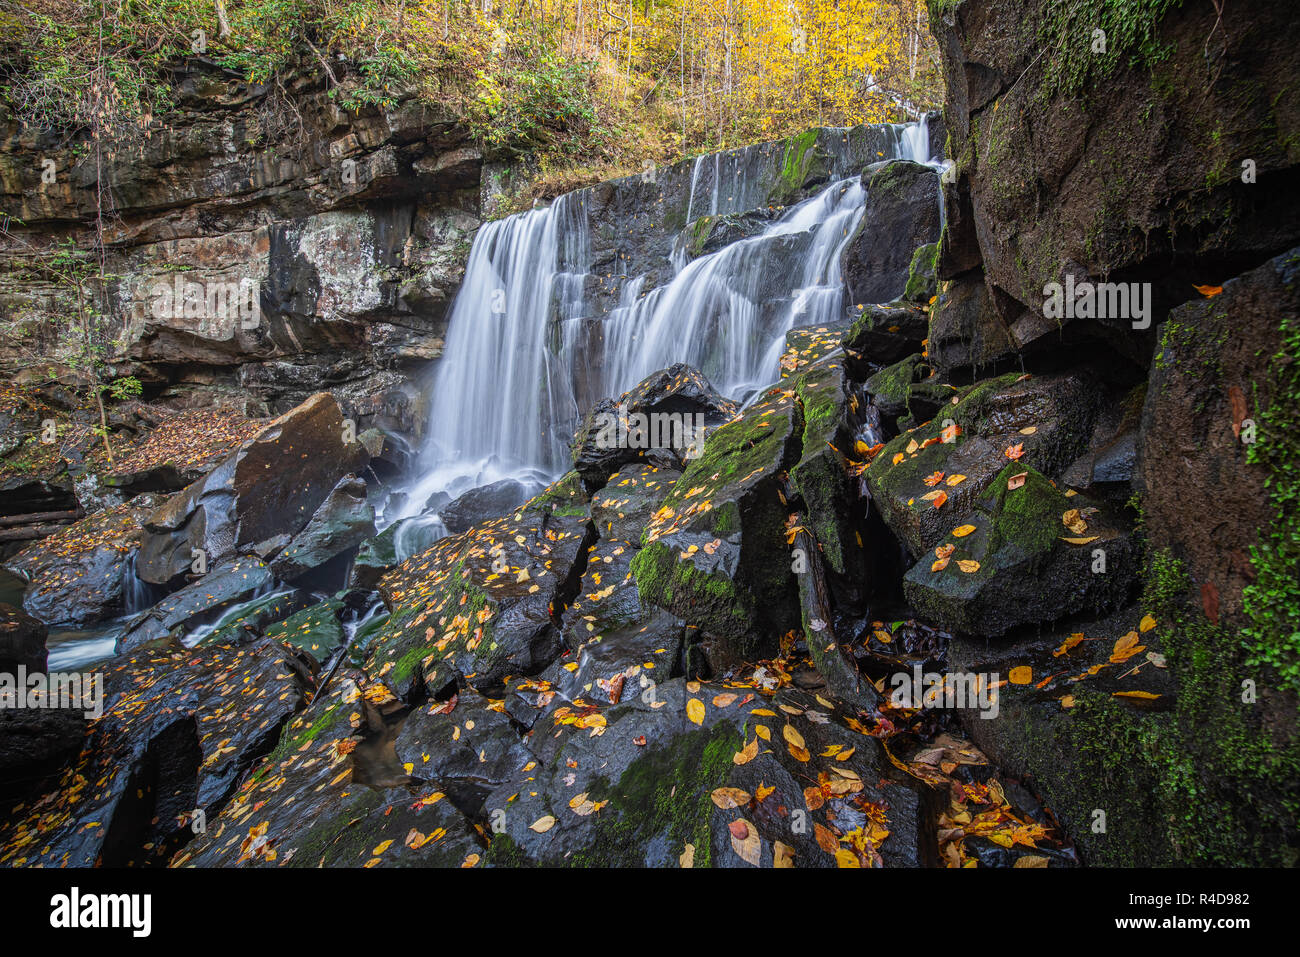 Wolf Creek Falls en el New River Gorge de West Virginia está enmarcada por rocas y árboles adornados con coloridas amarillo follaje de otoño. Foto de stock